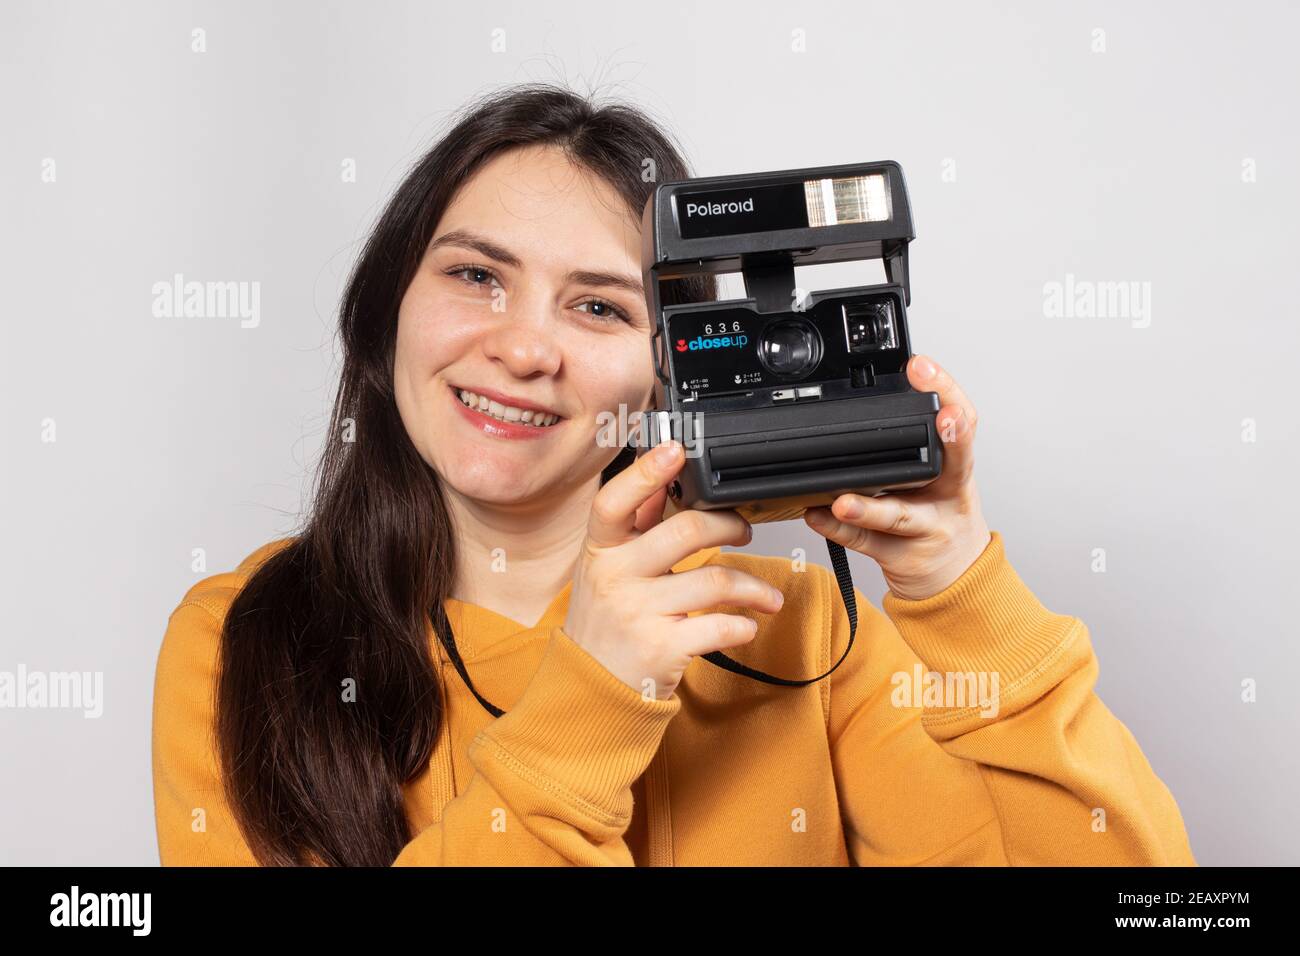 Eine schöne Brünette hält eine Polaroid-Kamera in der Hand und lächelt vor weißem Hintergrund. Fotografie Ausbildung, Fotografiekurse. Stockfoto